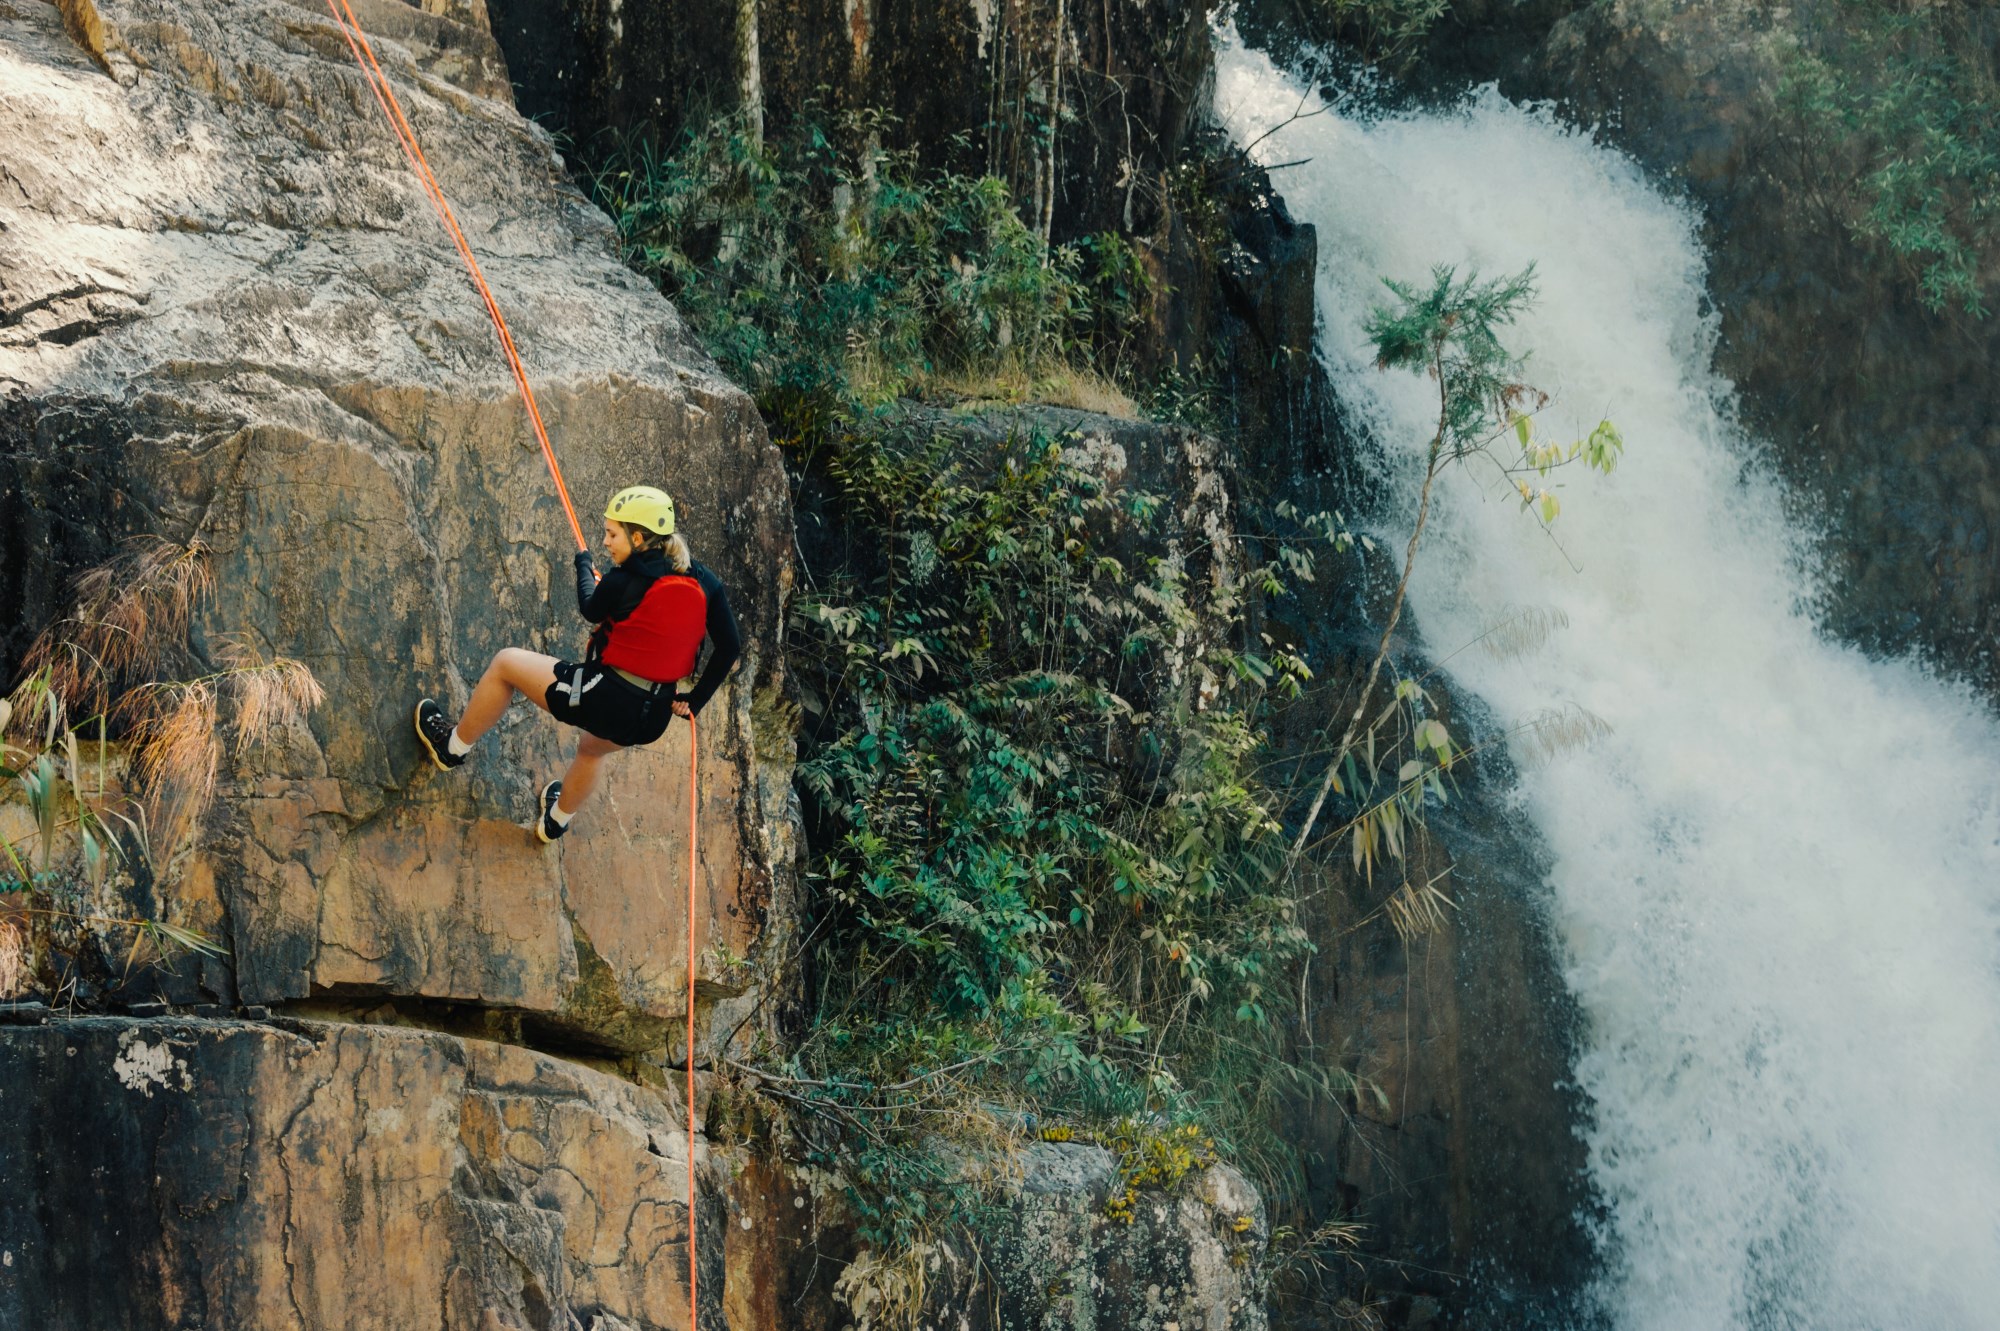 A woman rock climber enjoying the outdoor sport of rock climing near a waterfall.